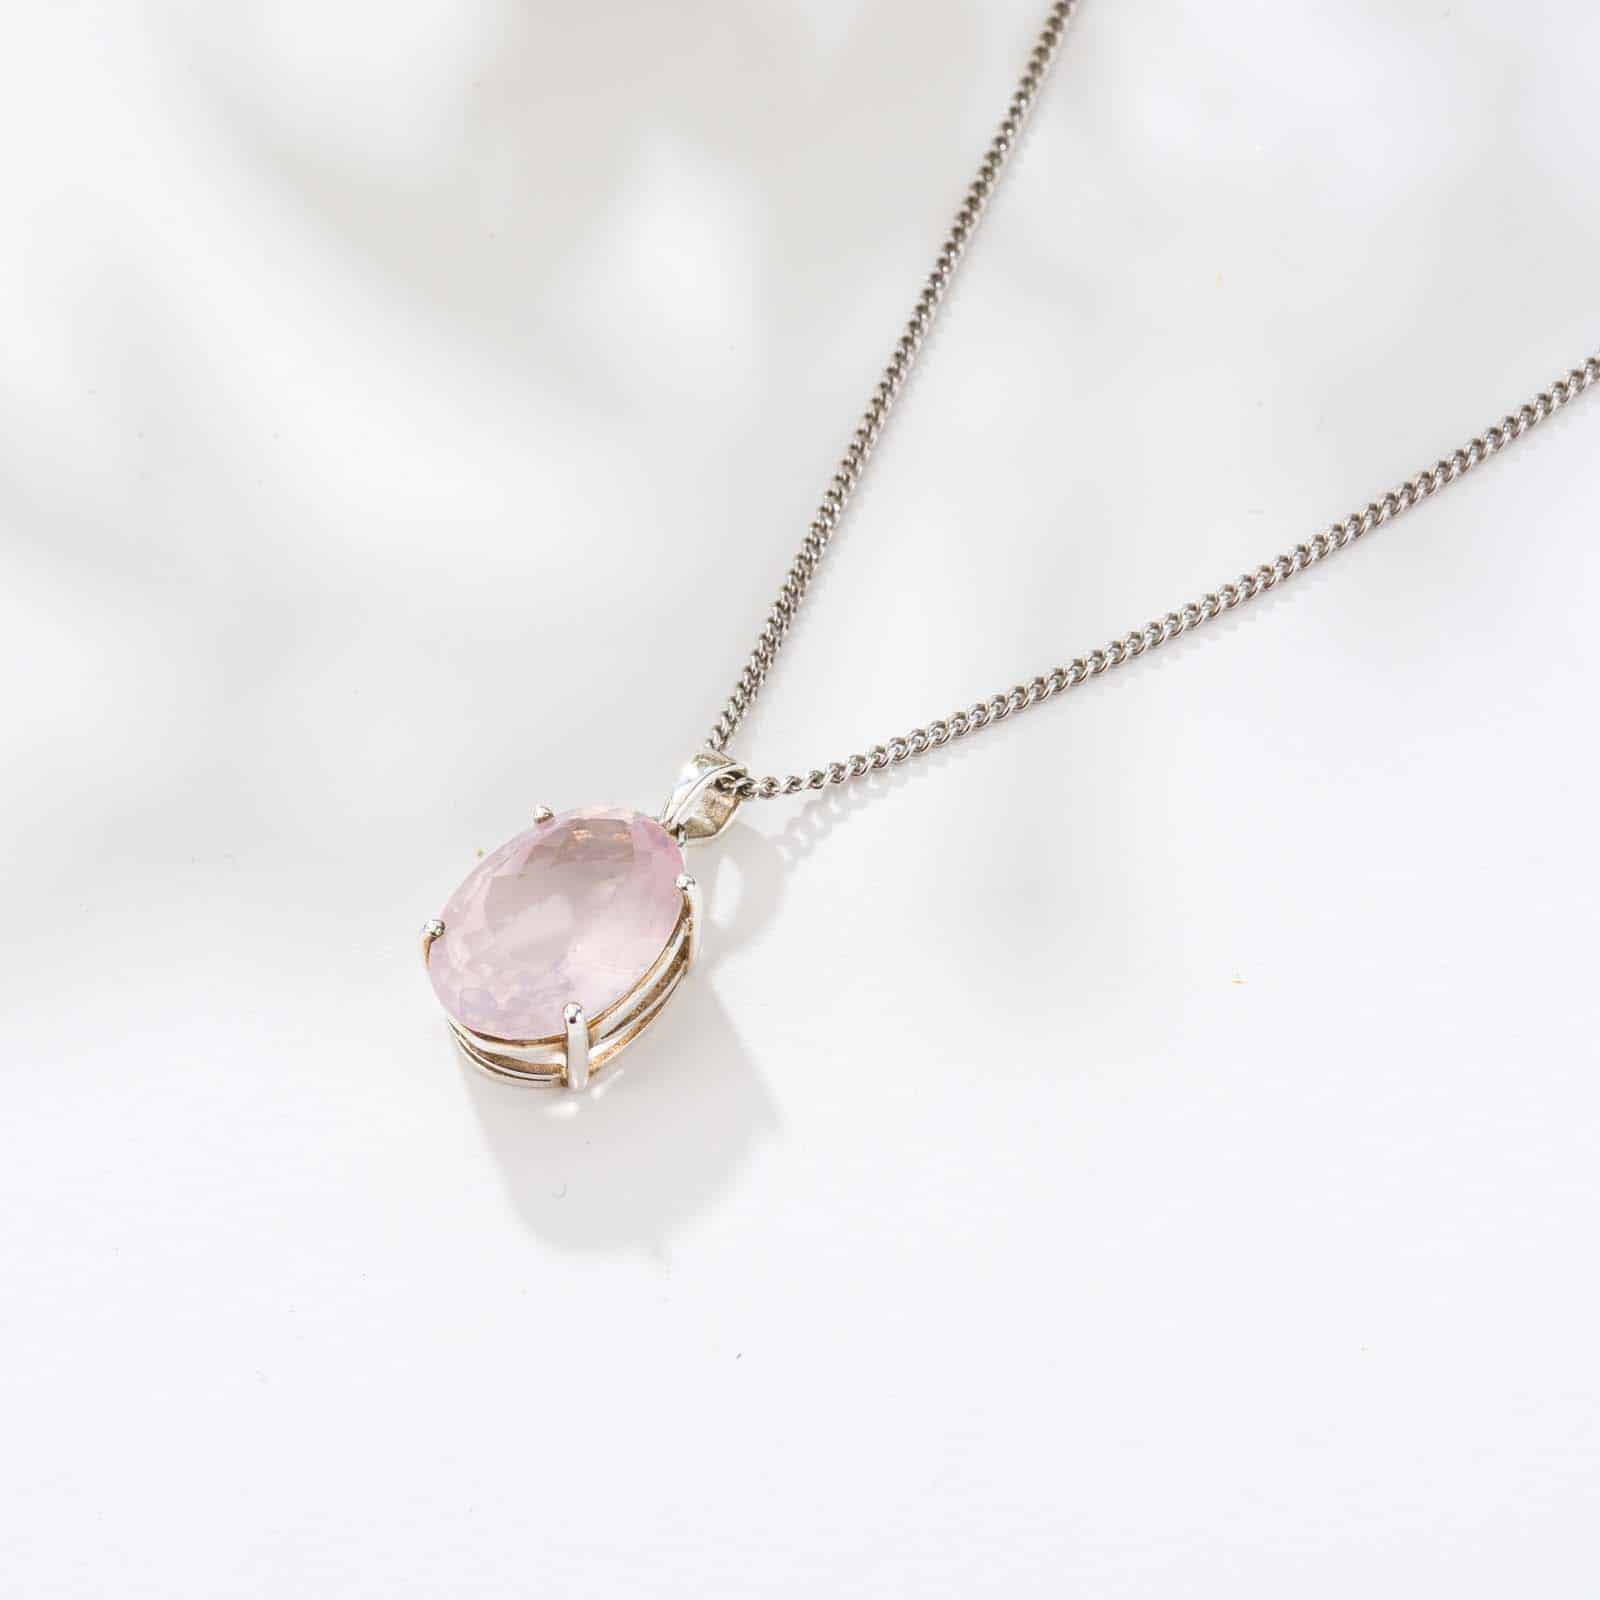 Μενταγιόν από ασήμι 925 και φυσική πέτρα ροζ χαλαζία οβάλ σχήματος. Το μενταγιόν είναι περασμένο σε αλυσίδα από ασήμι 925. Αγοράστε online shop.